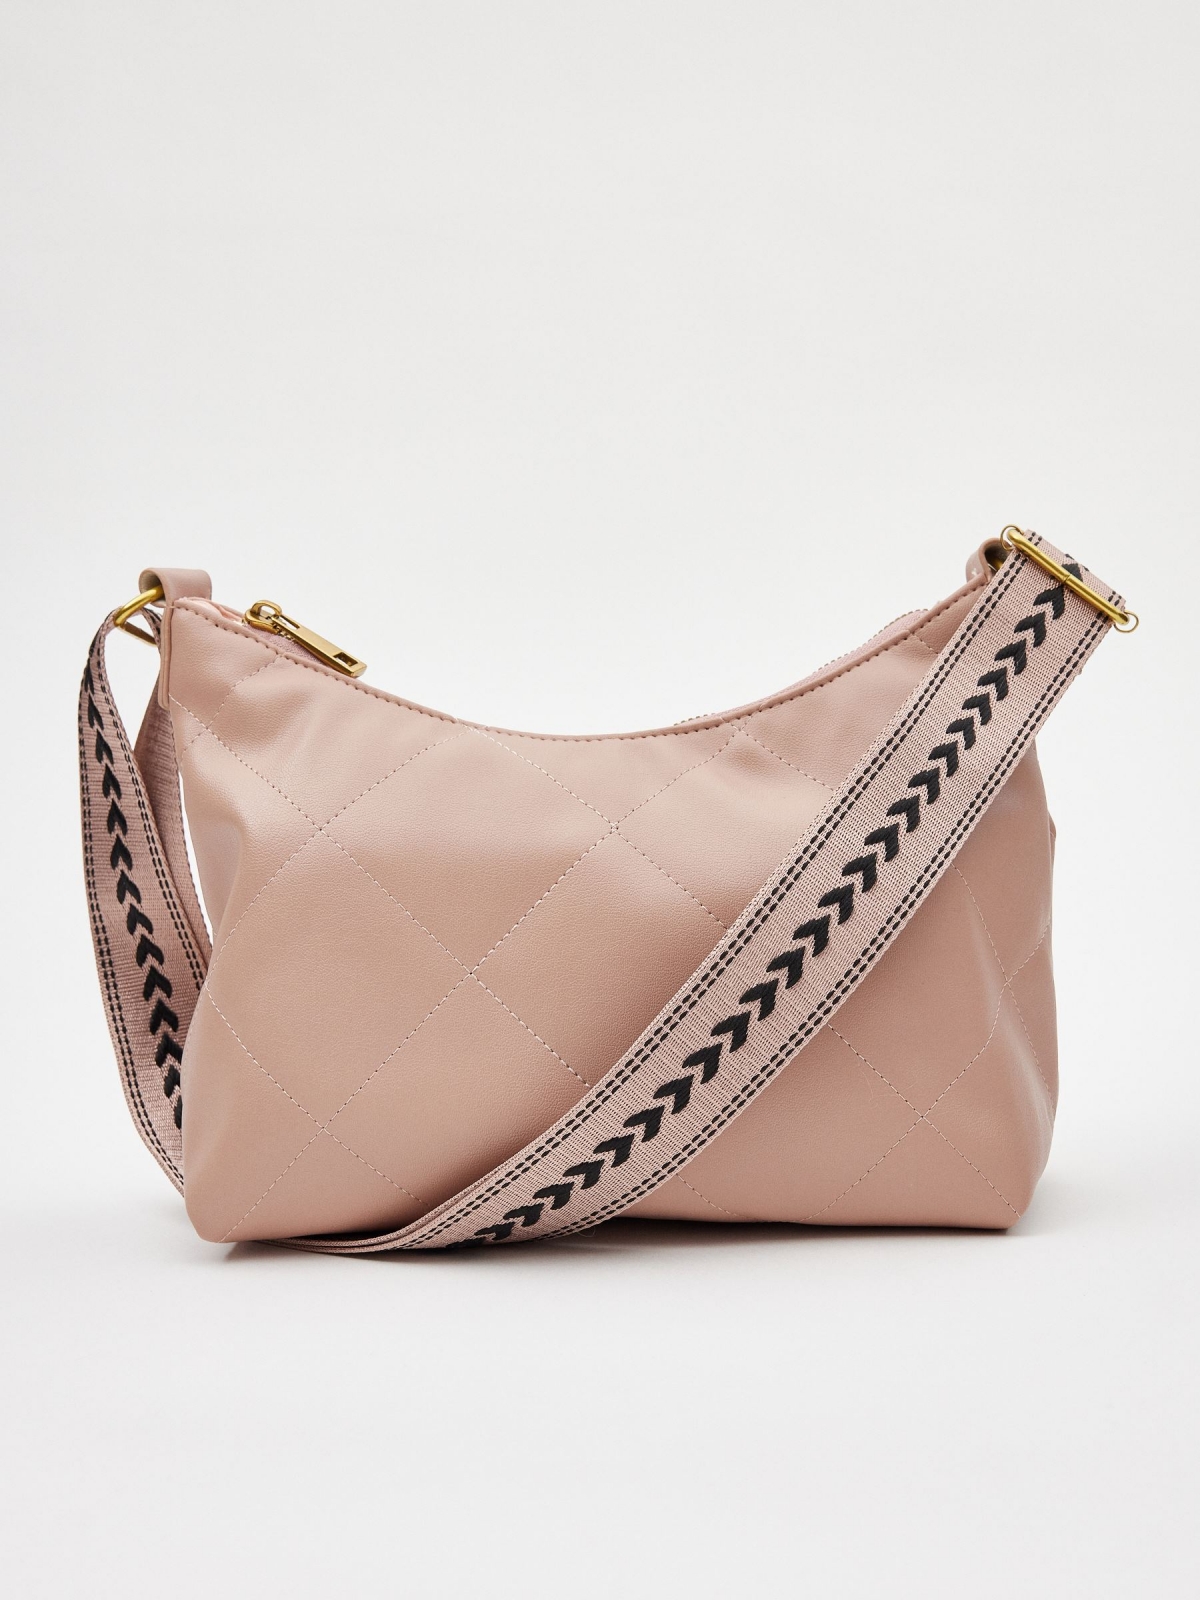 Handbag 25x17x9cm nude pink